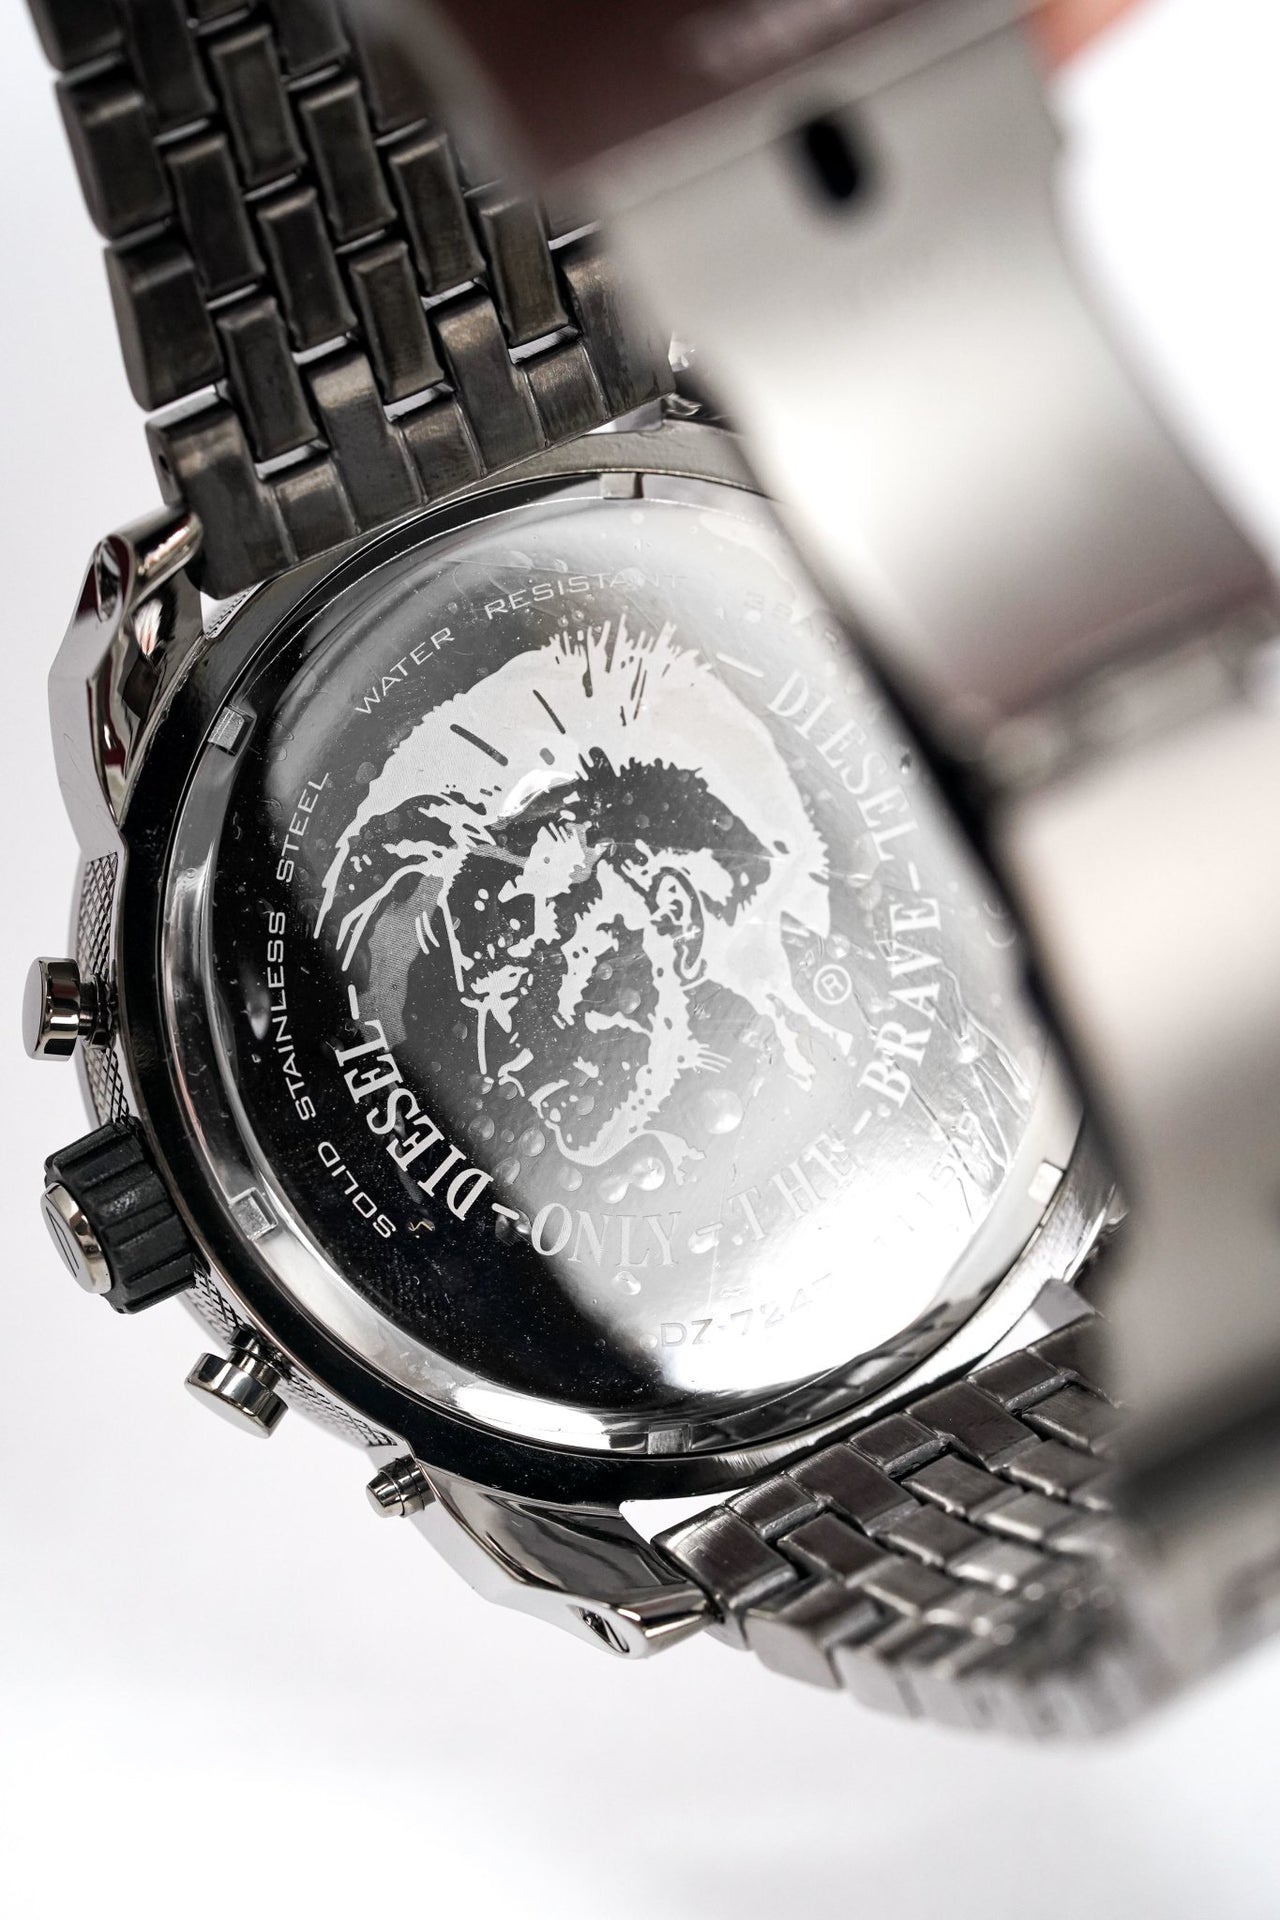 Diesel Men's Chronograph Watch Big Daddy Gun Metal - Watches & Crystals